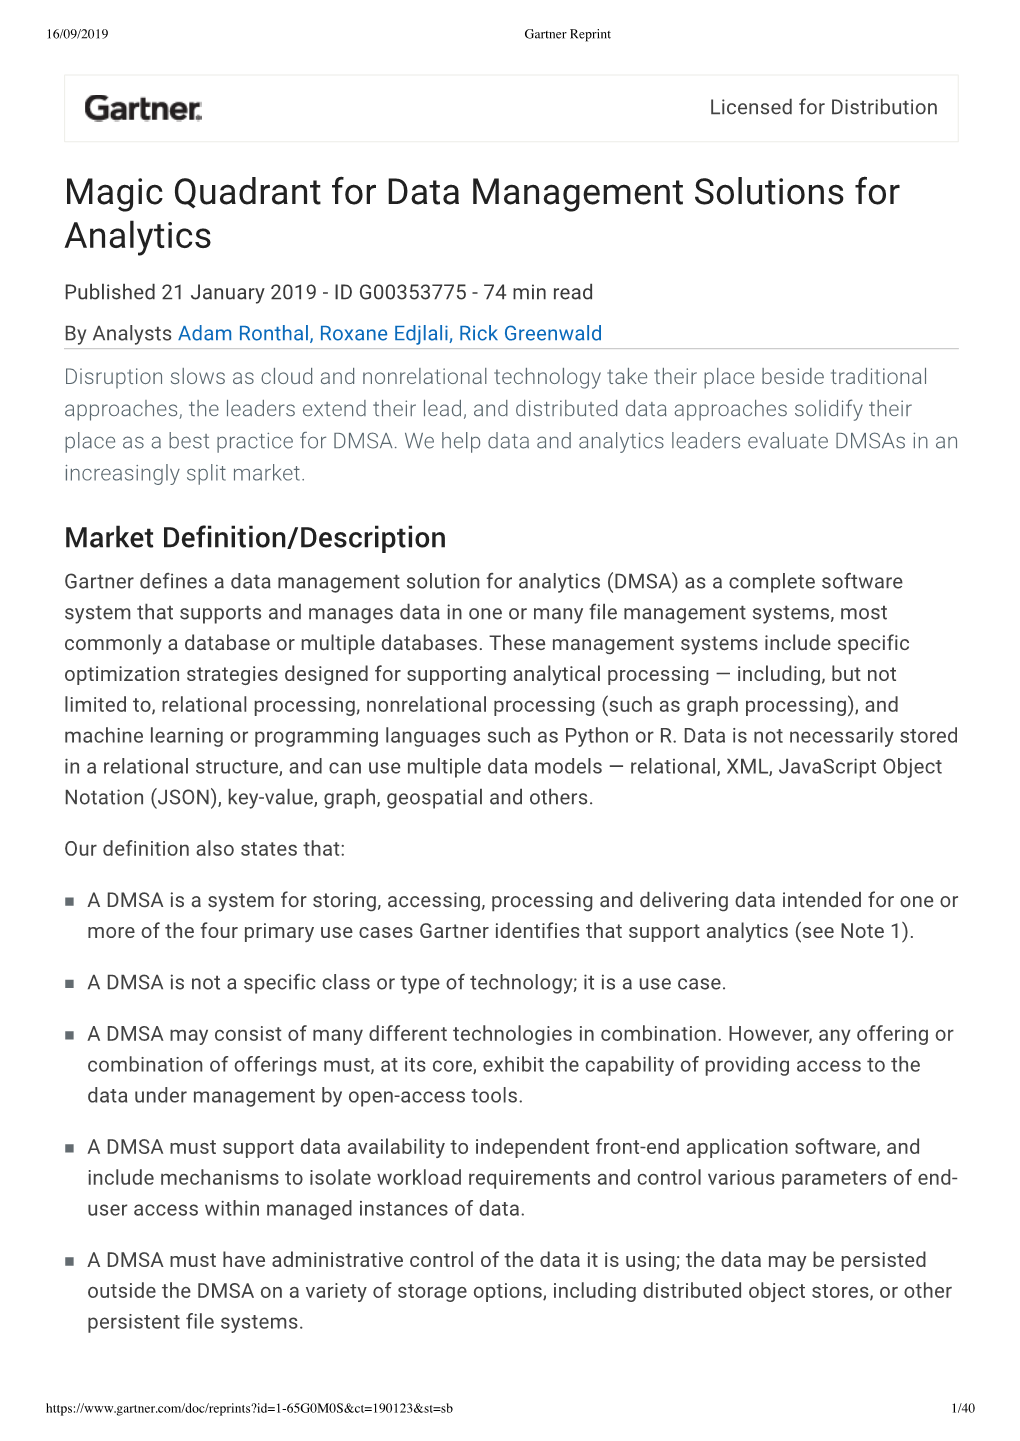 Gartner Magic Quadrant for Data Management Solutions for Analytics